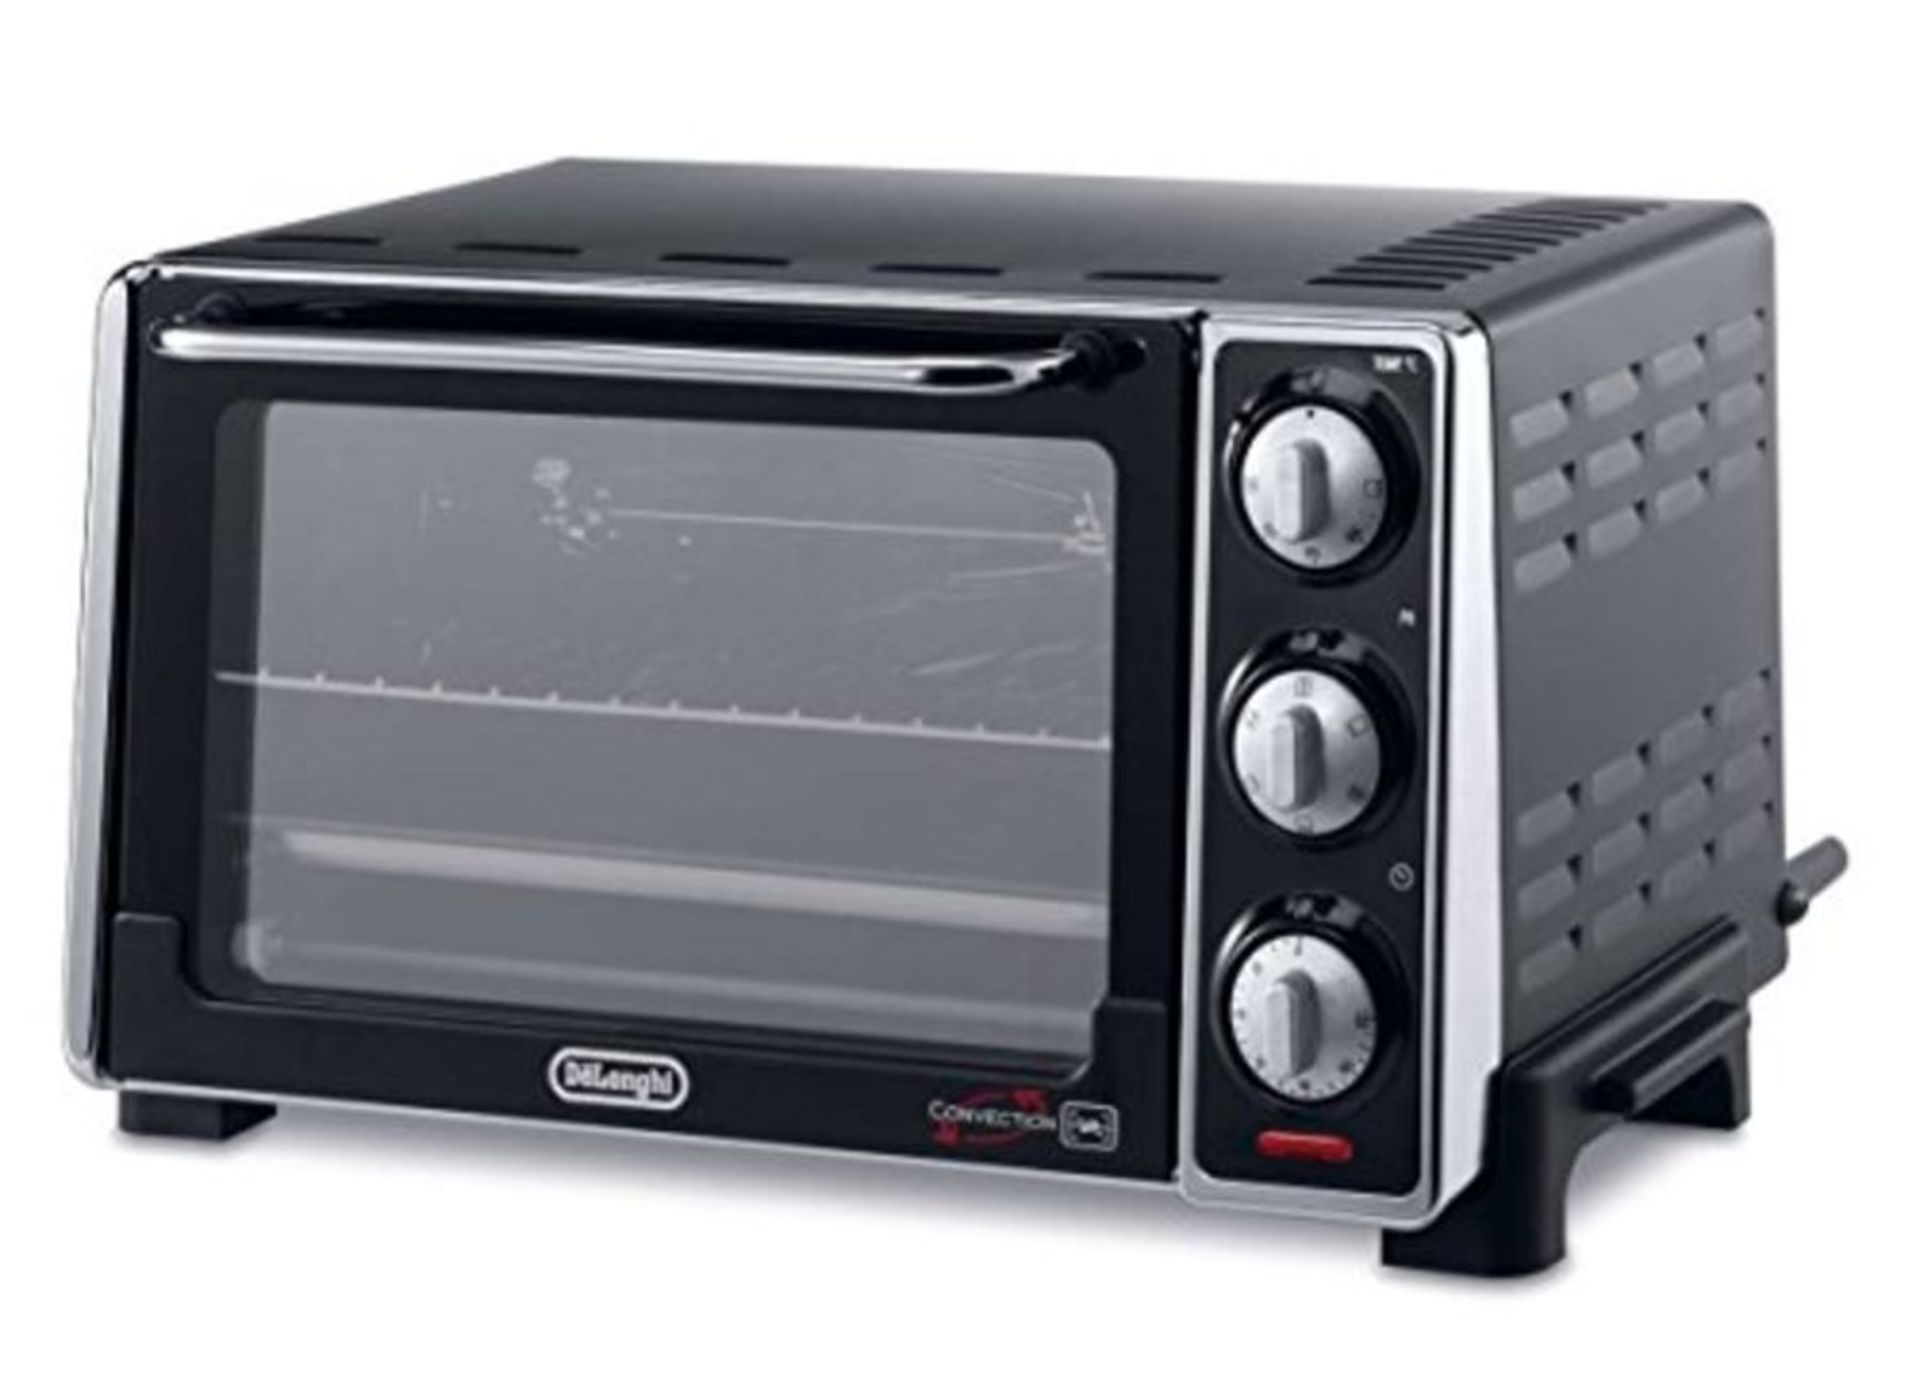 RRP £96.00 De longhi oven 20lt eo2079. 2 black ventilated standards a12